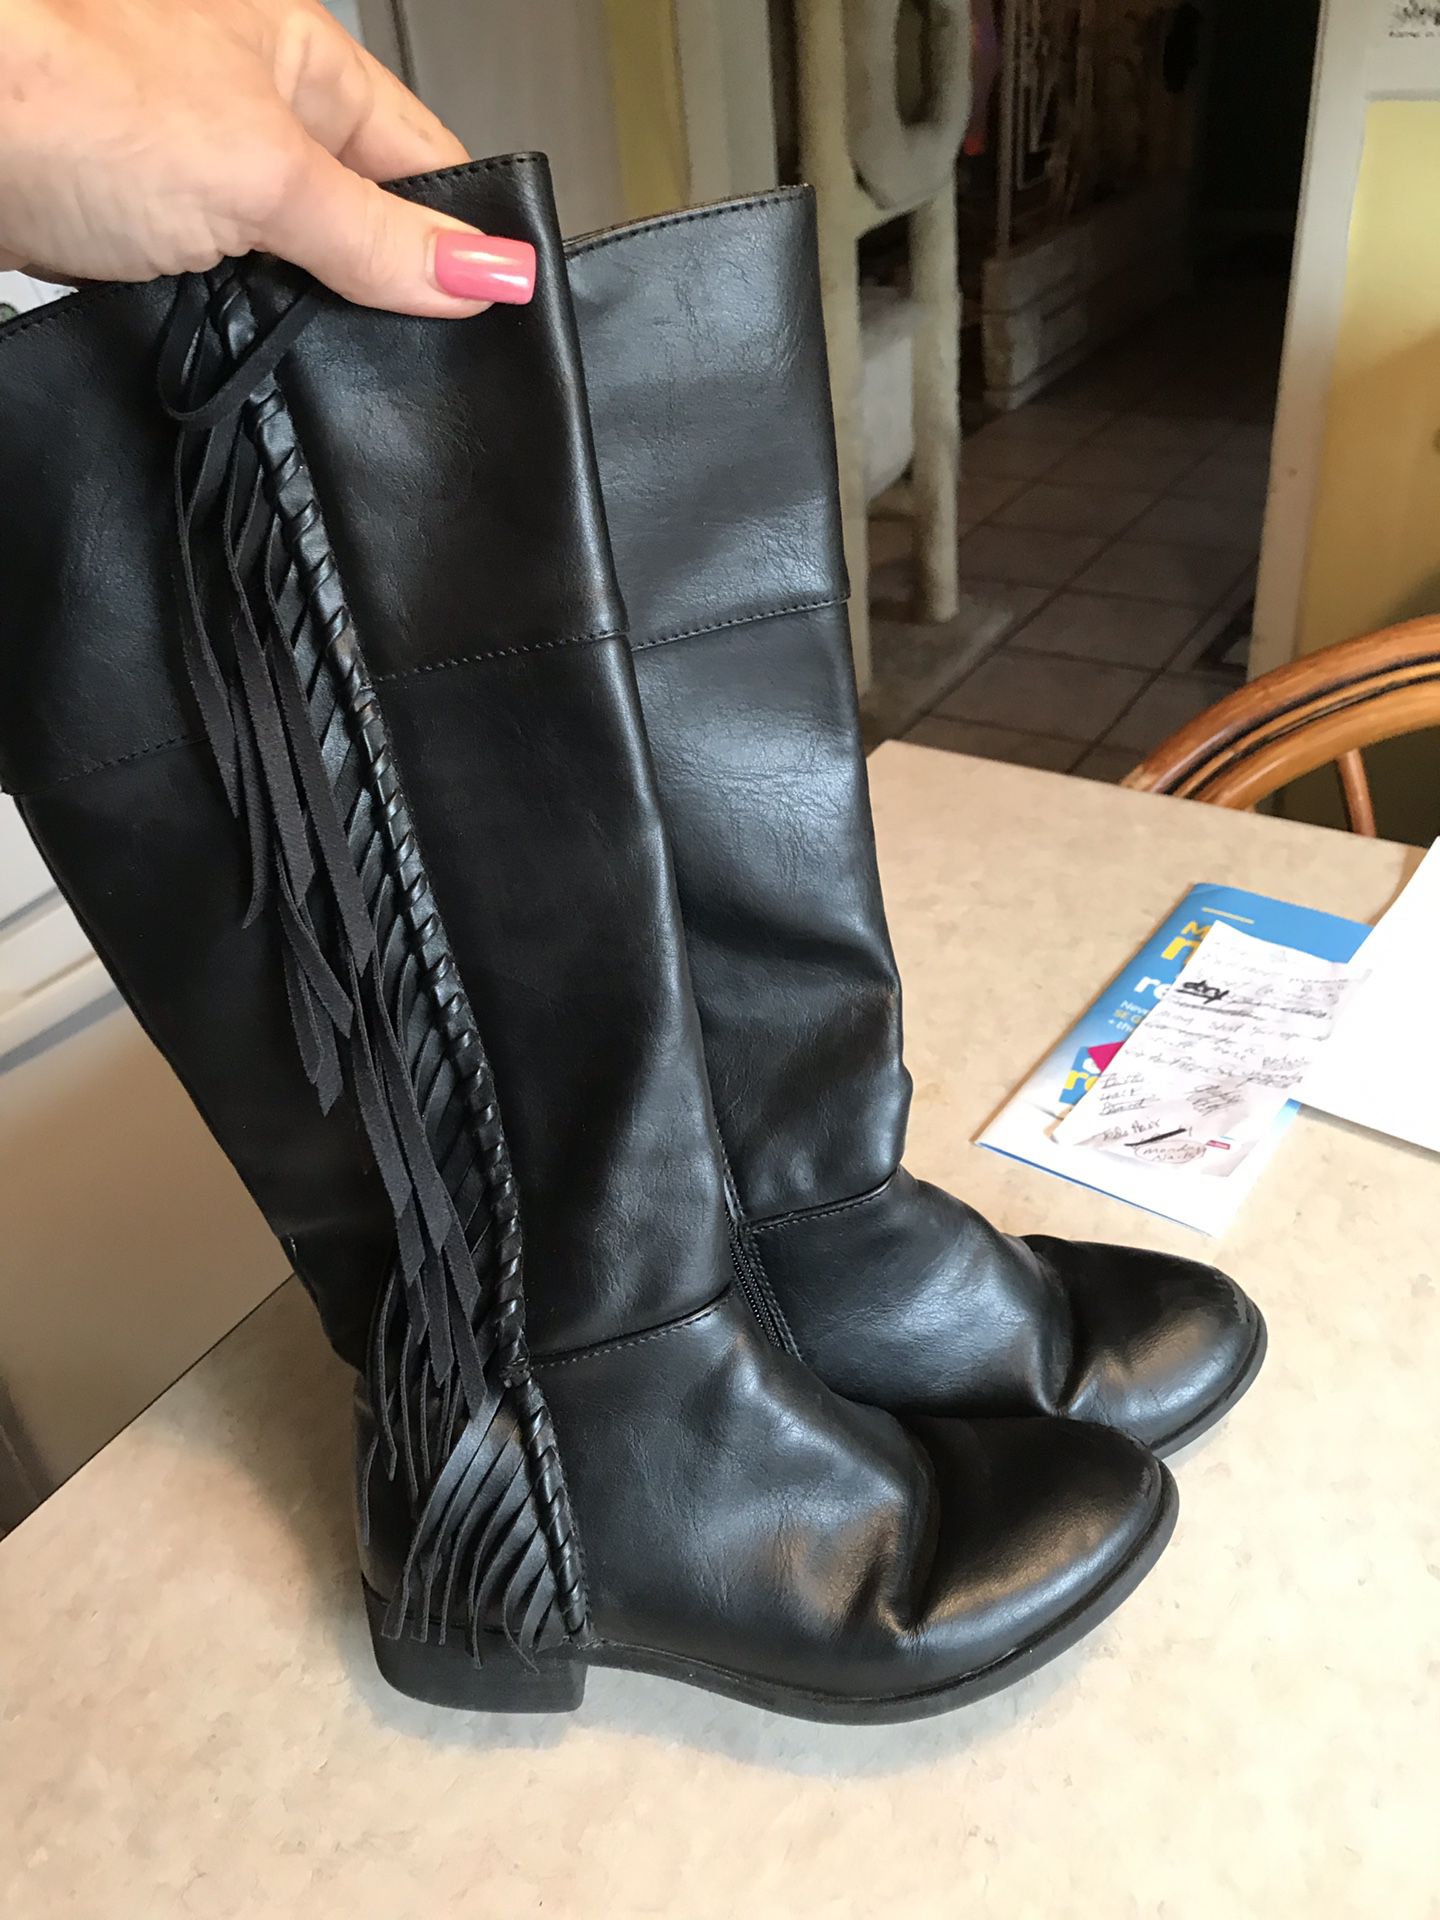 Girls Size 2 Black Leather Boots w Fringe